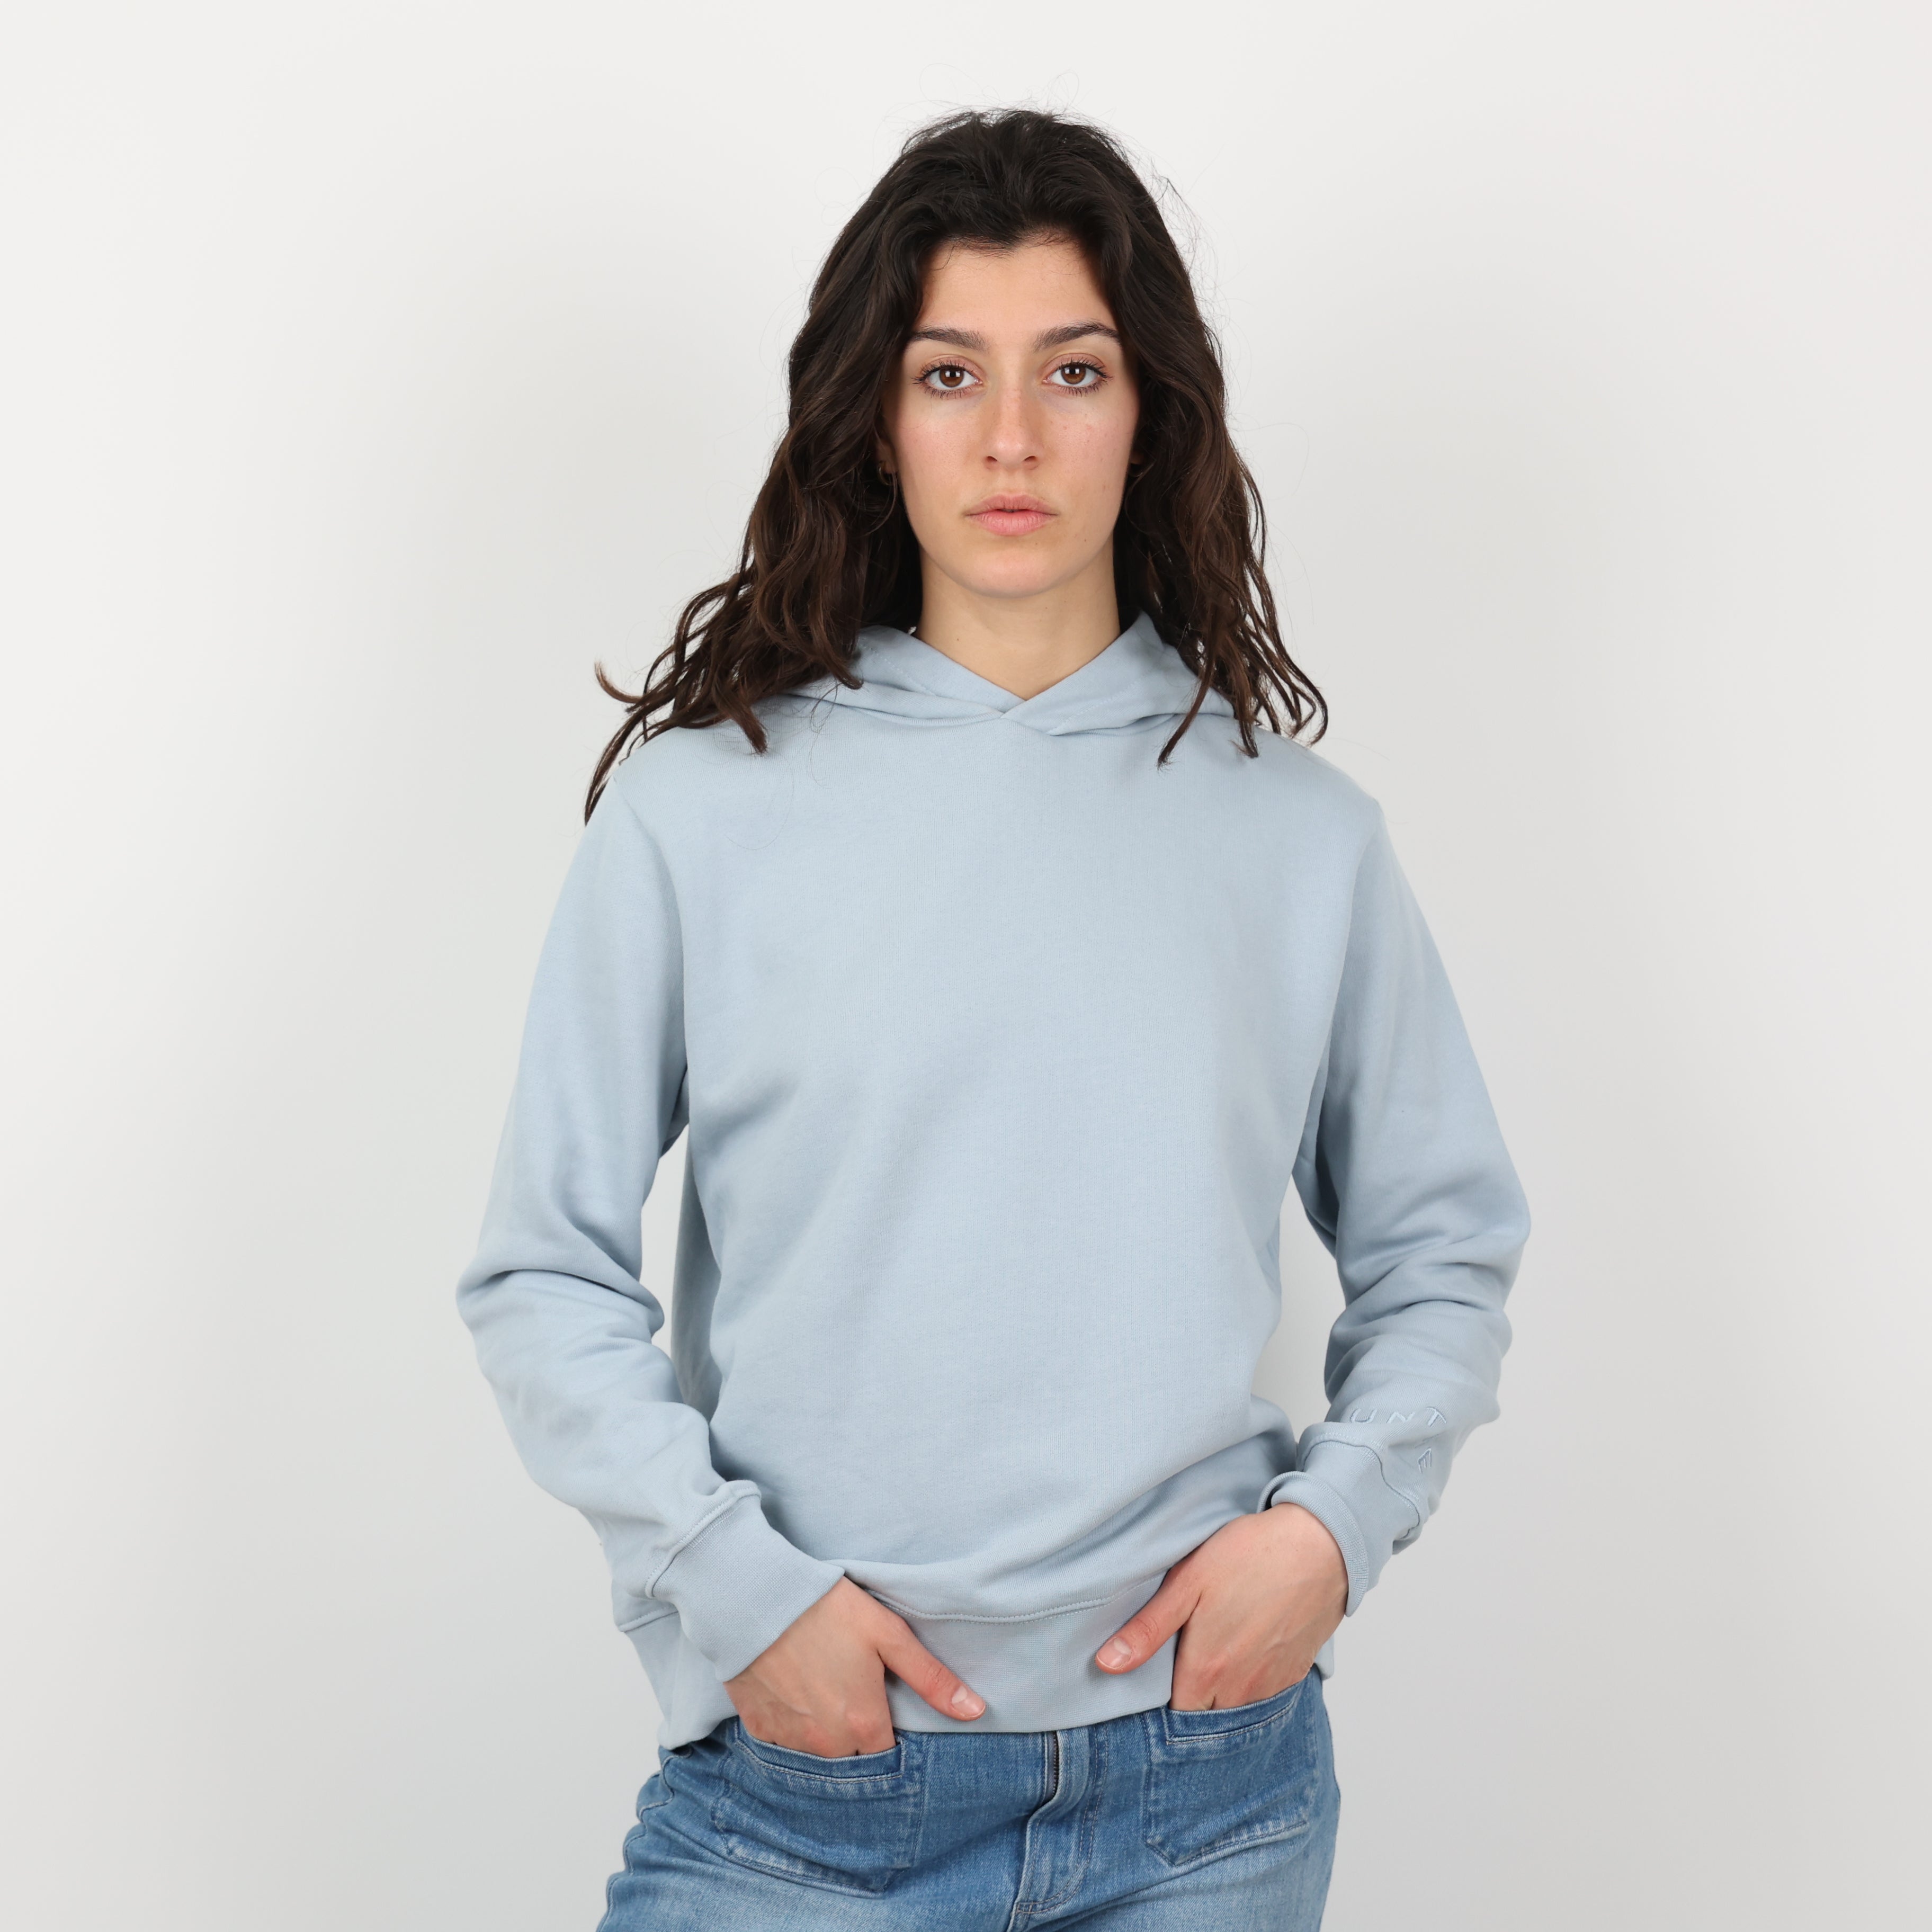 Sweatshirt, UK Size 6